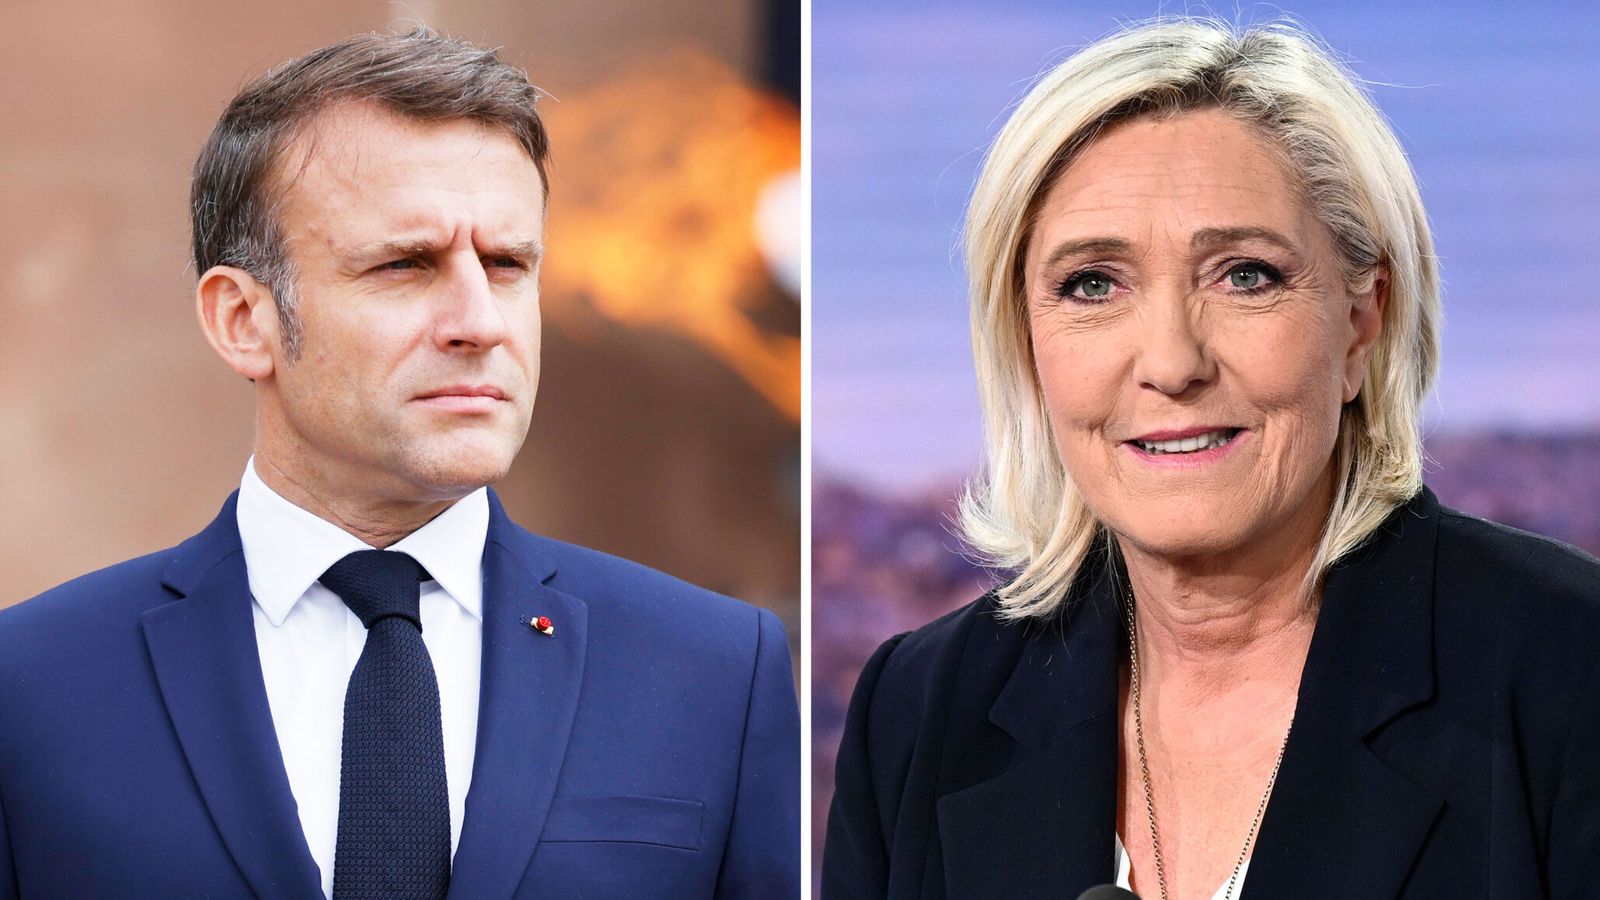 Ouverture des bureaux de vote pour les élections françaises qui pourraient voir l’extrême droite au pouvoir | Actualités du monde